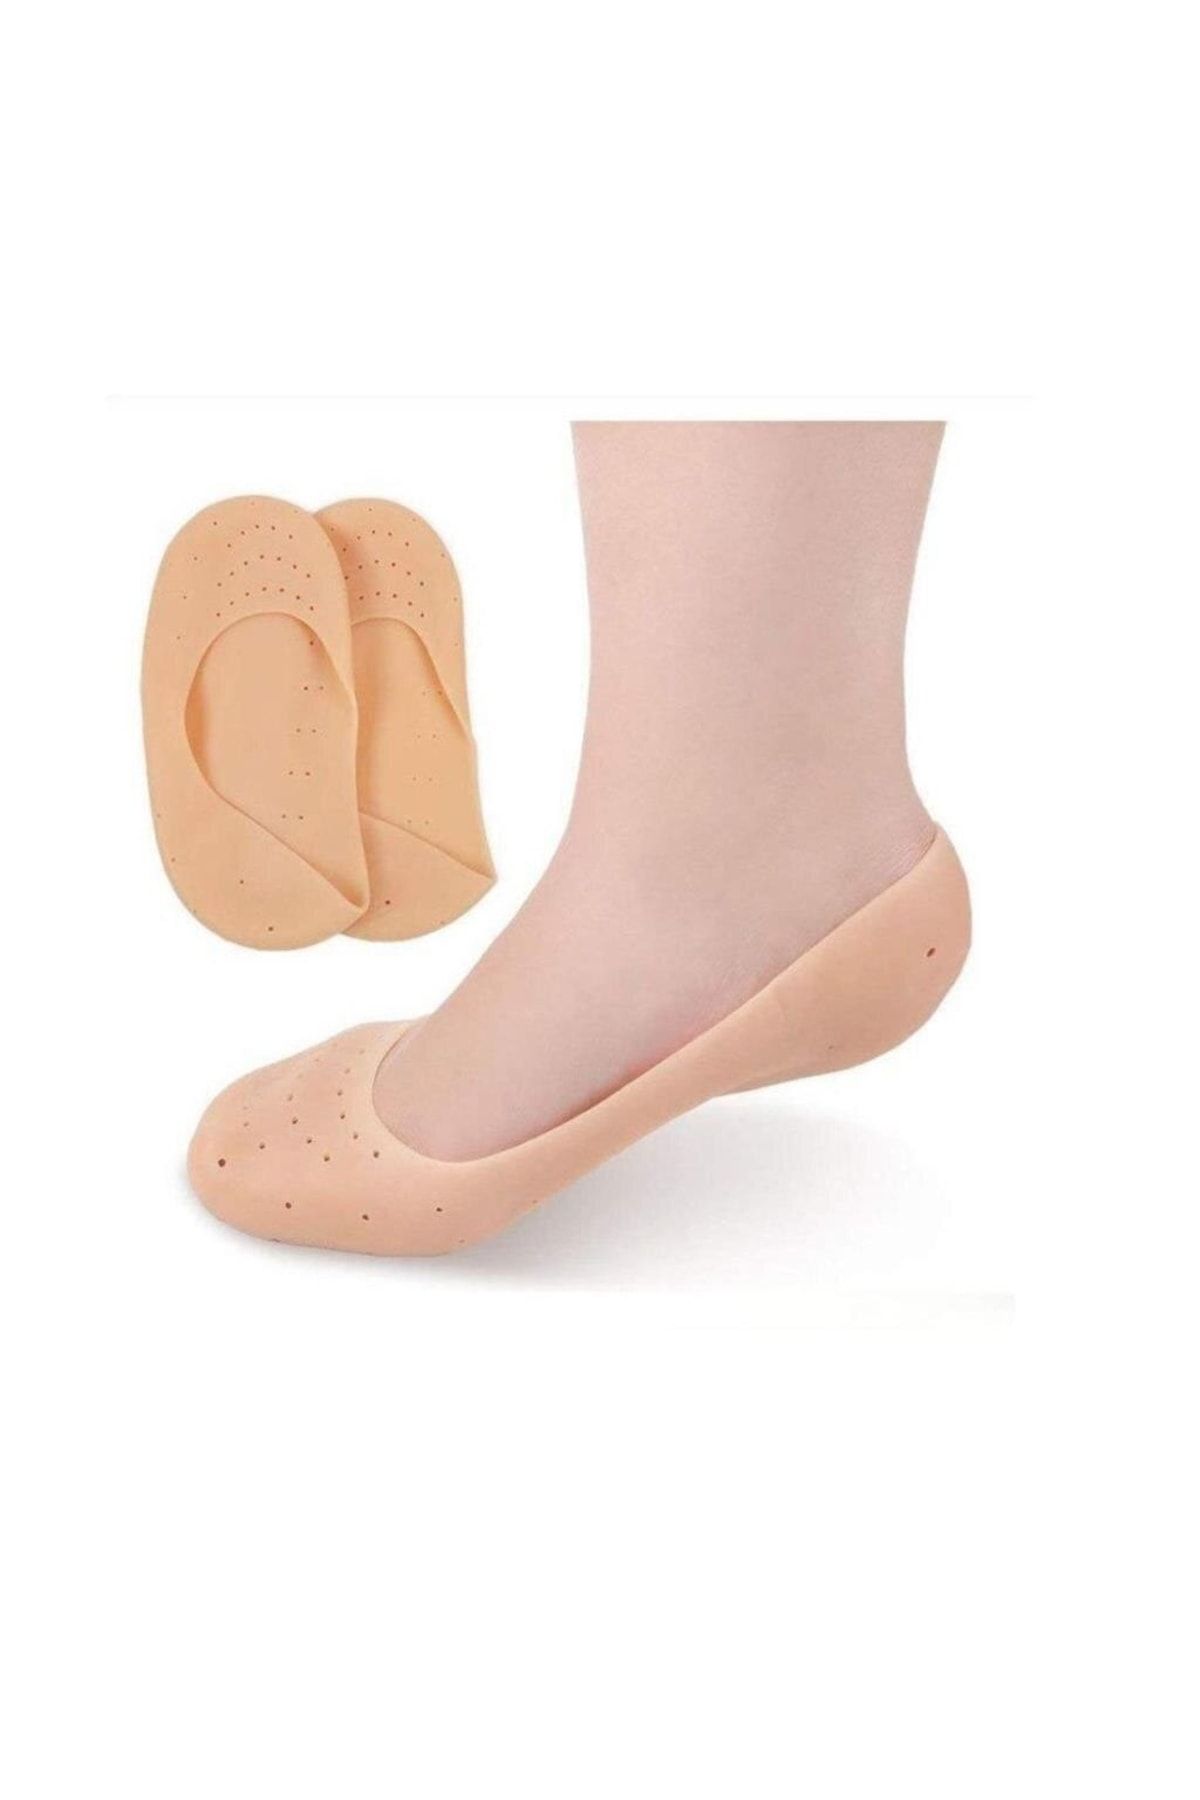 optana Ayak Topuk Çatlak Çorabı Silikon Patik Ten Rengi Çorap Ayak Nemlendirici Tahriş Çatlak Önleyici 1çft